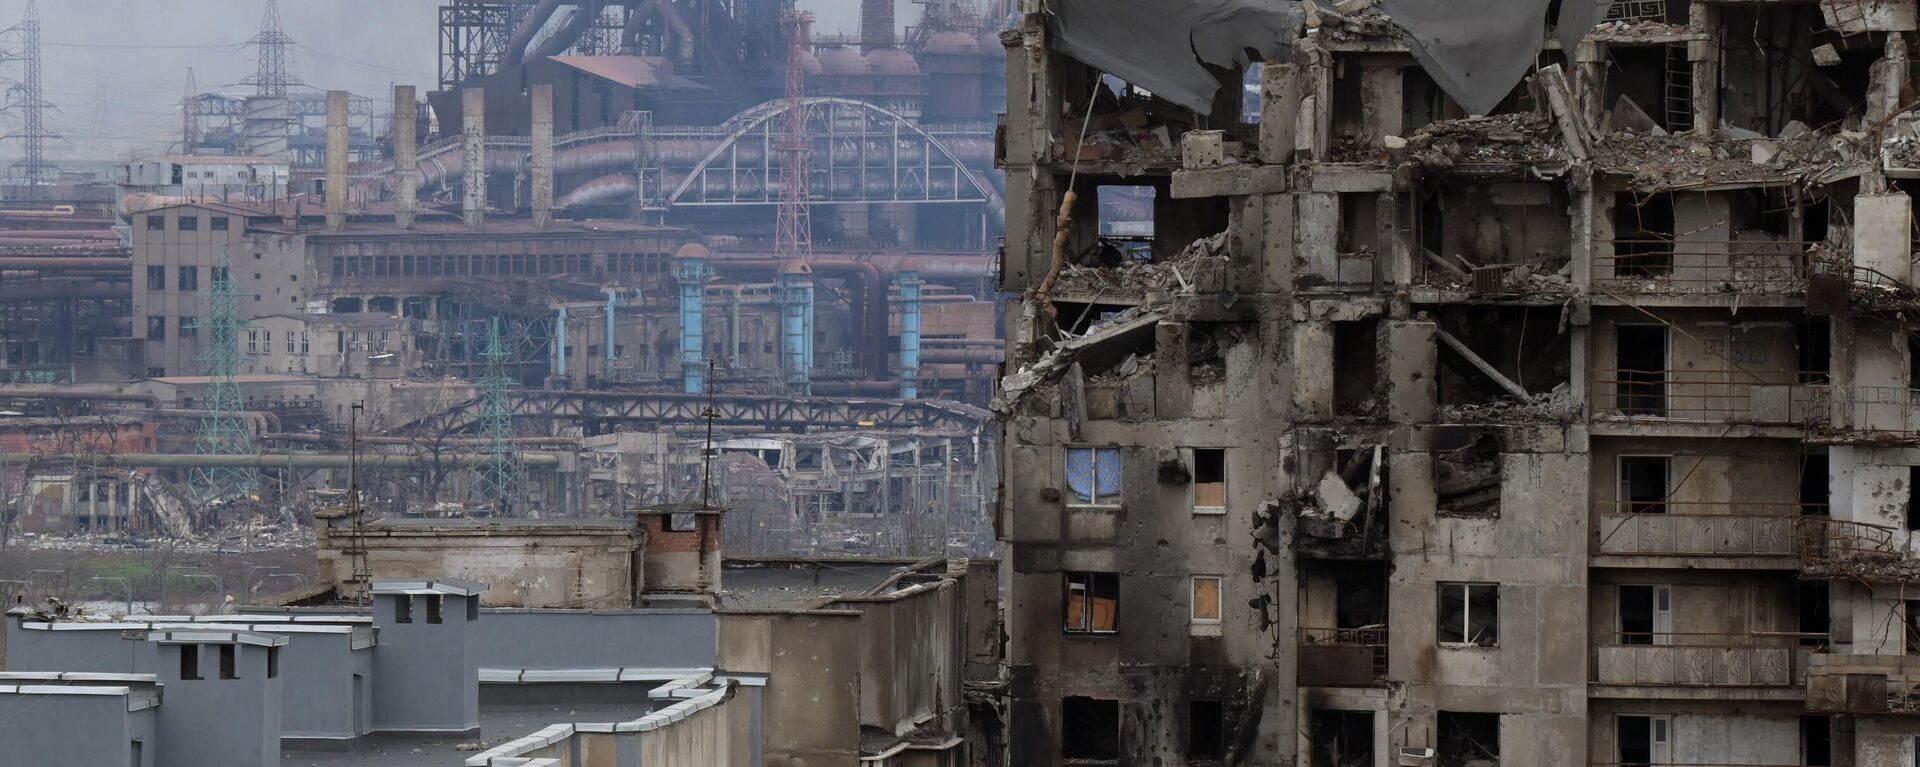 Một ngôi nhà bị phá hủy gần nhà máy Azovstal ở Mariupol. - Sputnik Việt Nam, 1920, 21.04.2022